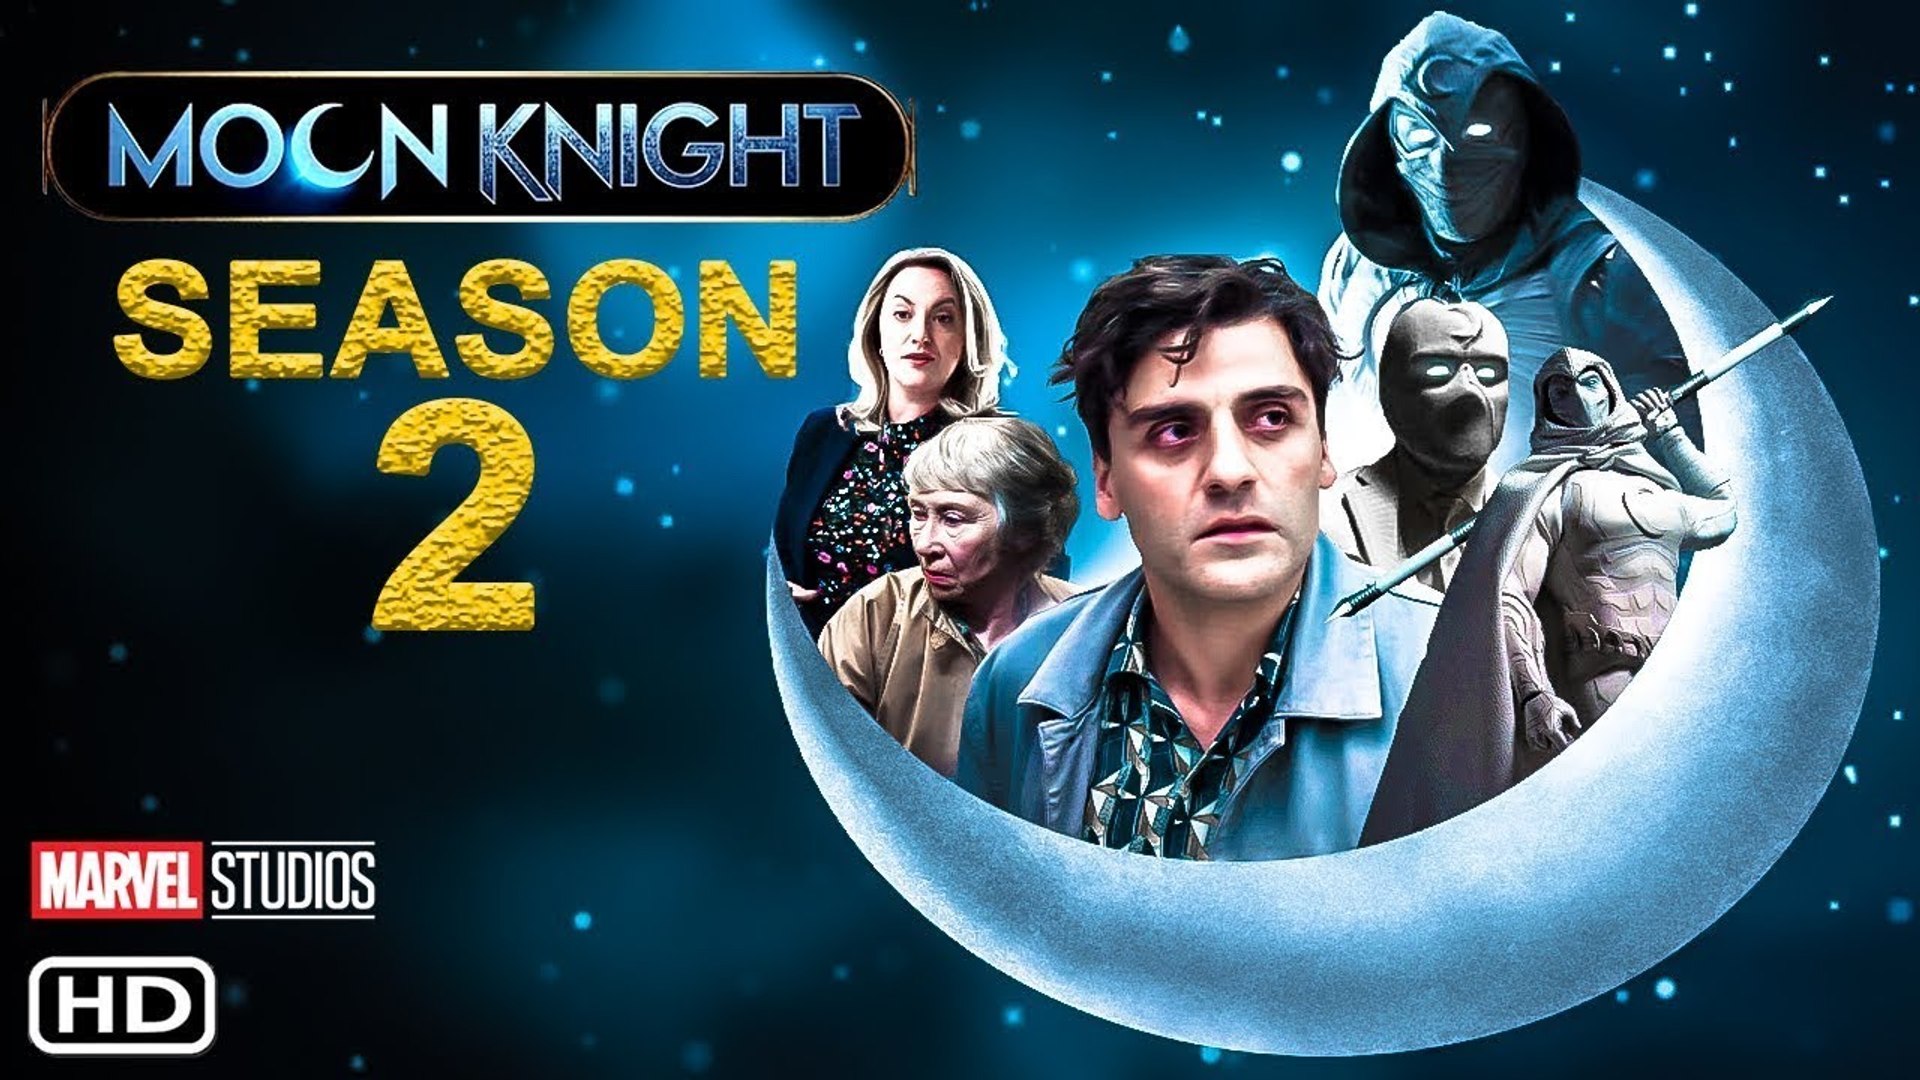 MOON KNIGHT SEASON 2, OFFICIAL TRAILER, Moon Knight Season 2 Release Date